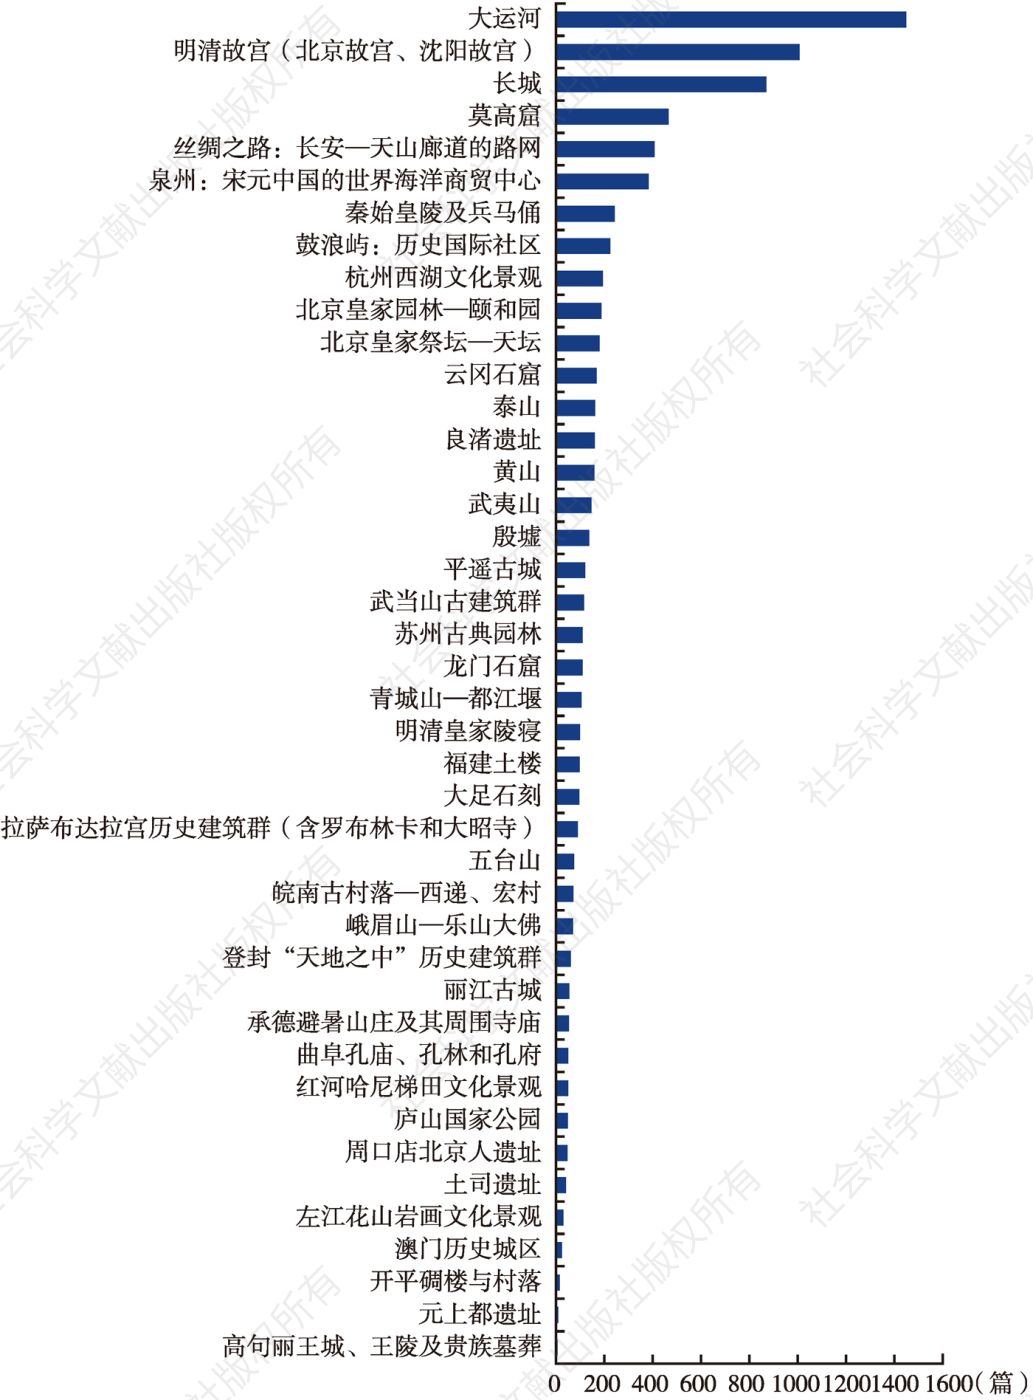 图3 2021年中国各项世界文化遗产核心舆情报道量